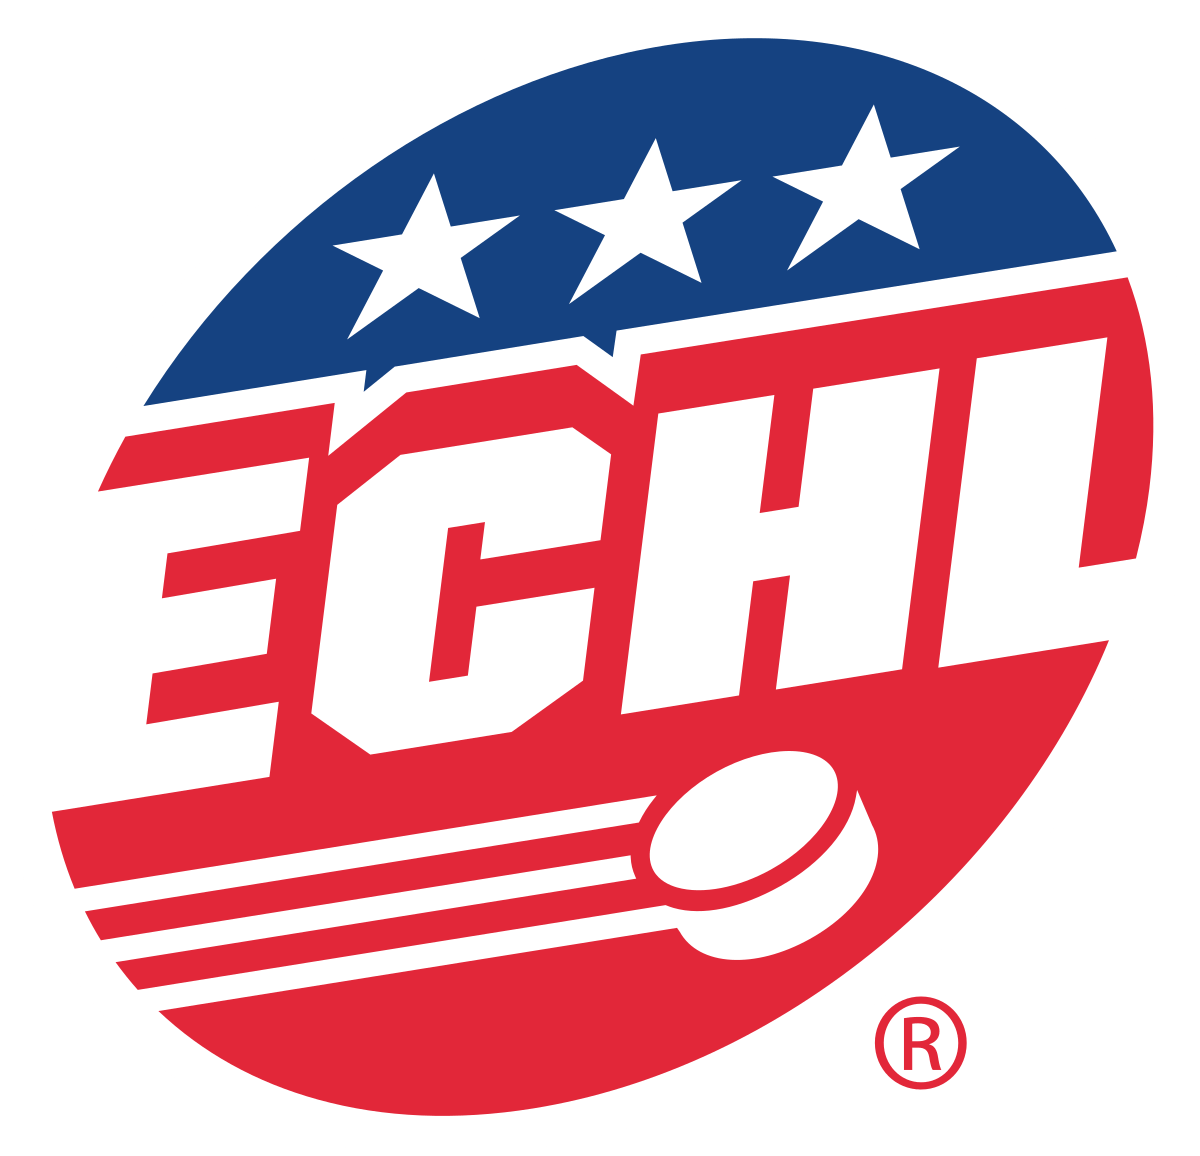 ECHL_Hockey.svg_.png